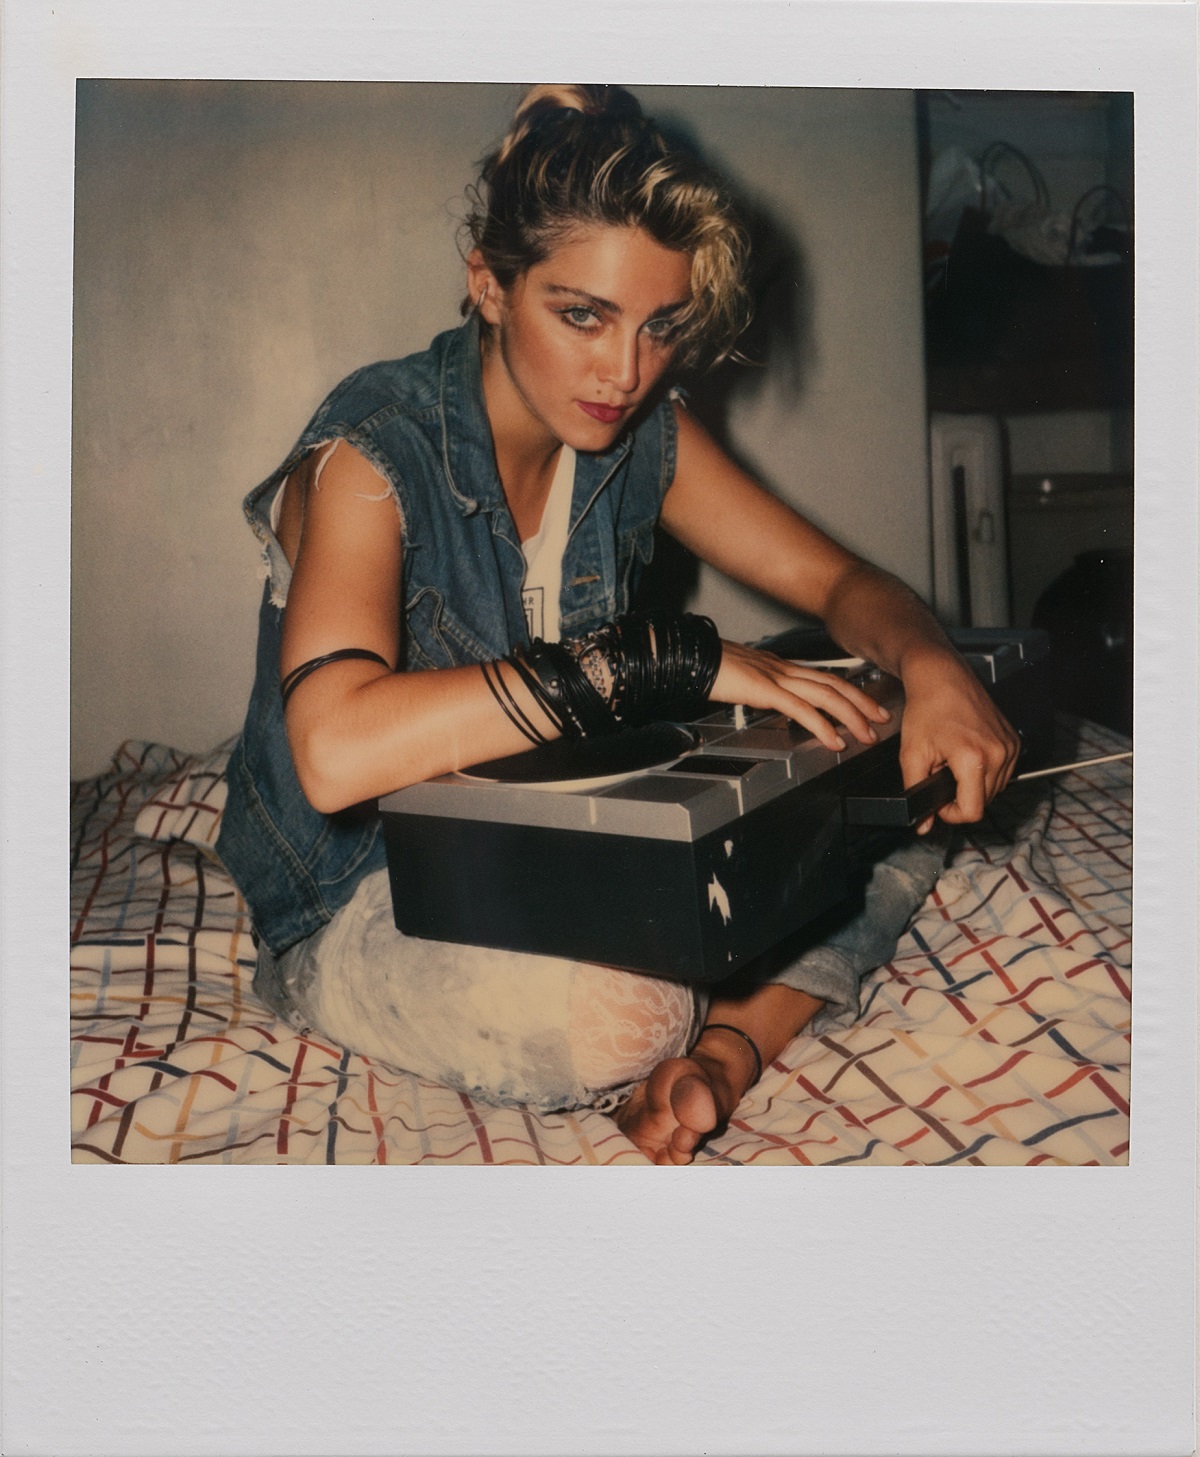 Мадонна на пороге славы в полароидных фотографиях 1983 года Ричарда Кормана 3